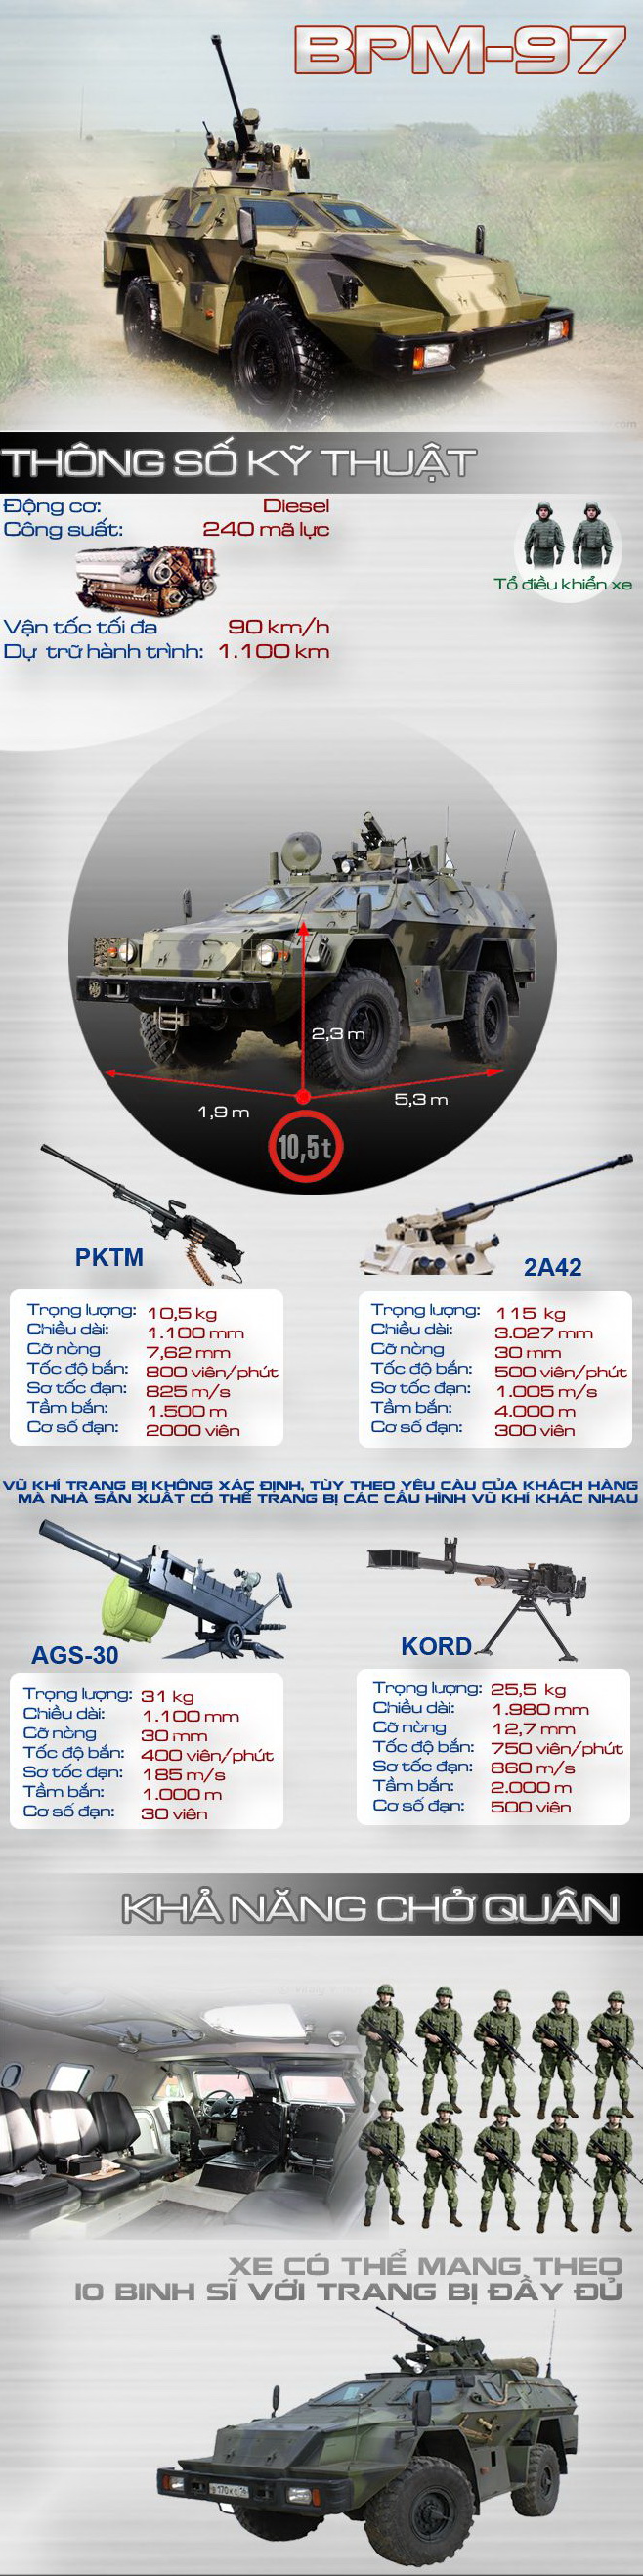 Ứng viên hàng đầu cho vị trí thay thế BTR-152 của Việt Nam - Ảnh 1.